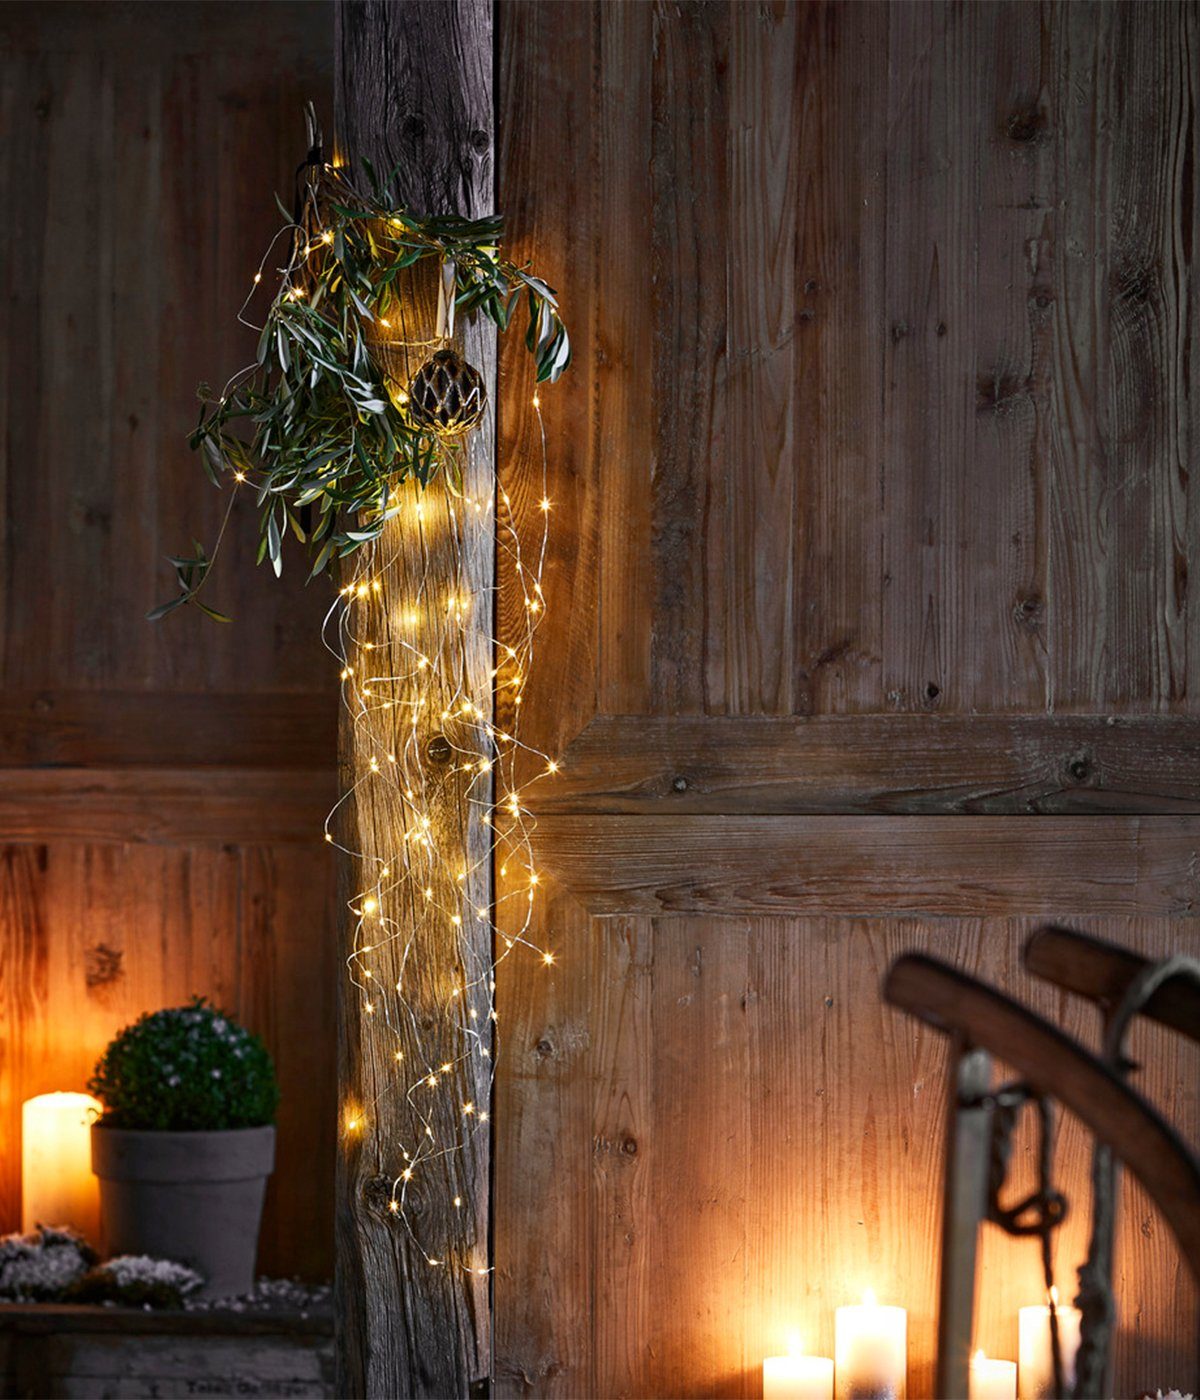 Dehner LED-Lichterkette LED Girlande, 120 warmweiß, mit Outdoor, Indoor 90 Länge / cm, für Weihnachtsbeleuchtung LEDs, 8h-Timer